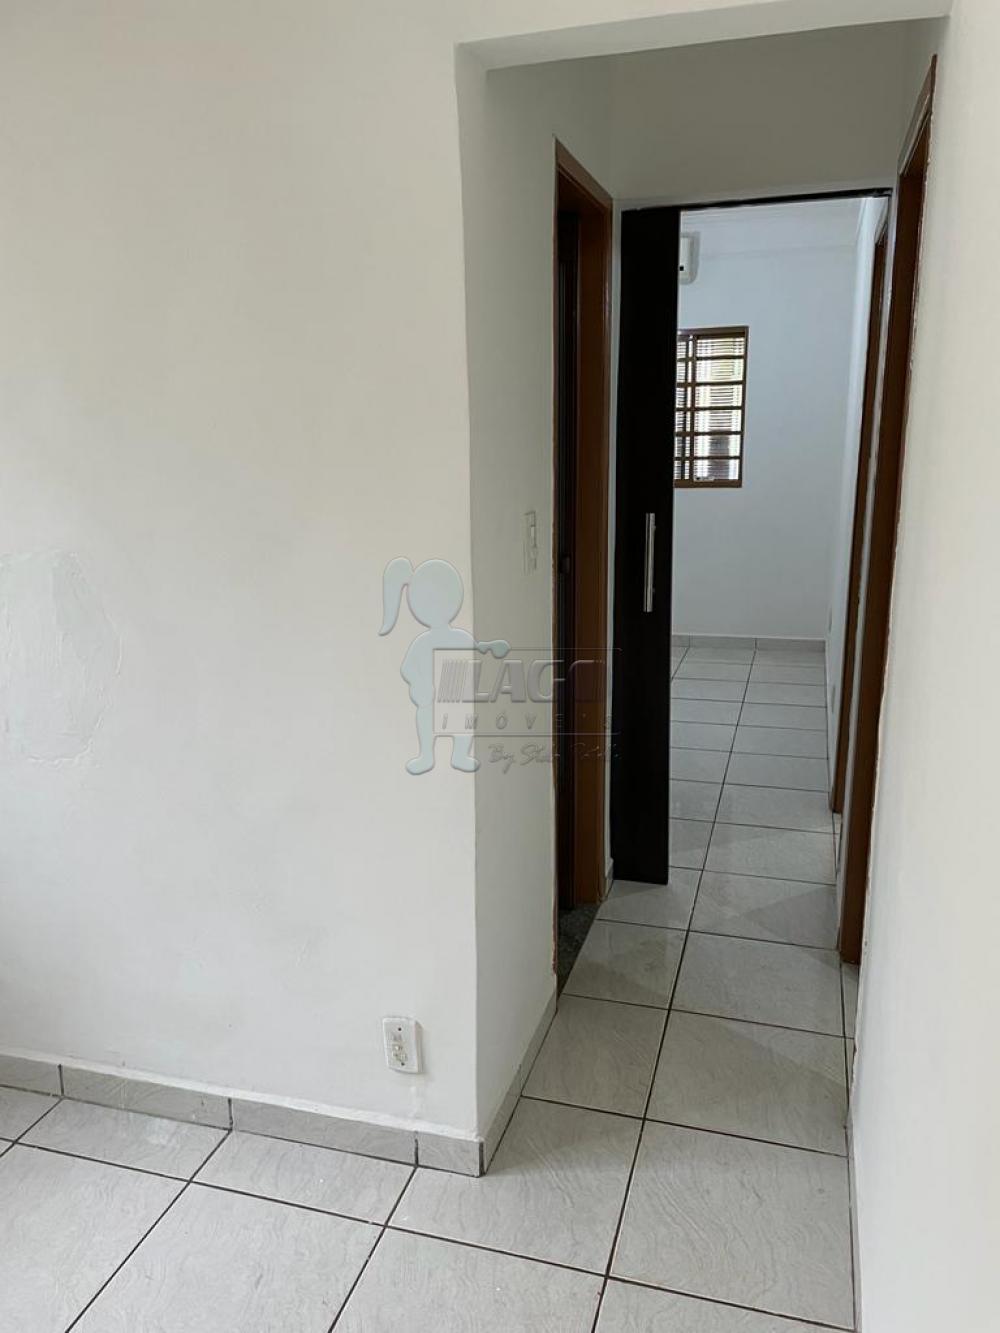 Comprar Casas / Padrão em Ribeirão Preto R$ 310.000,00 - Foto 6